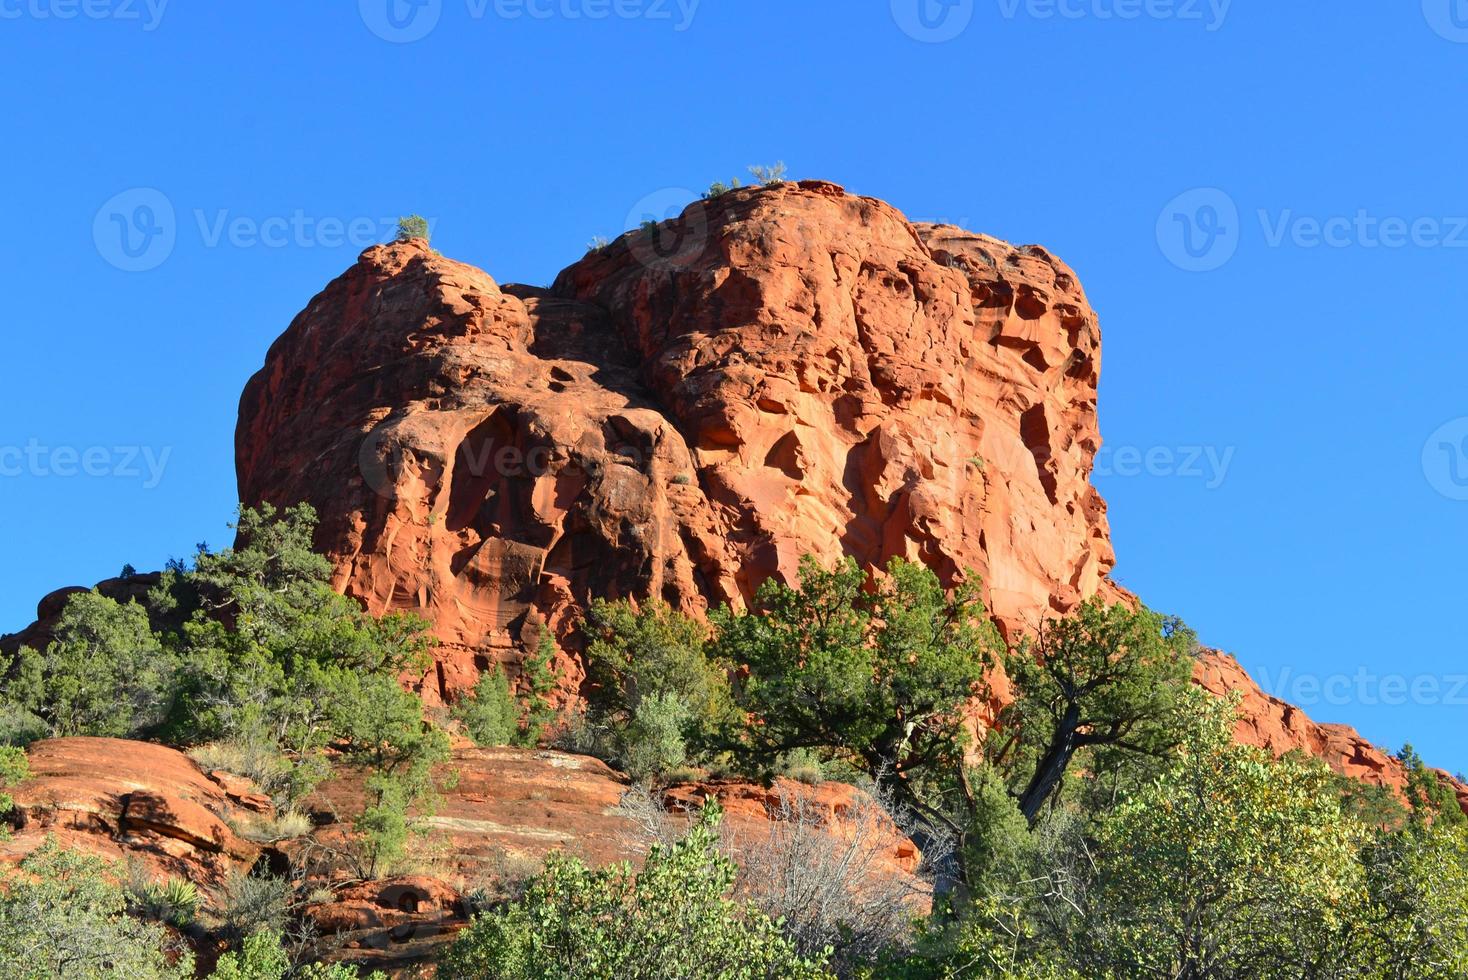 magnifique red rock mesa à sedona arizona photo